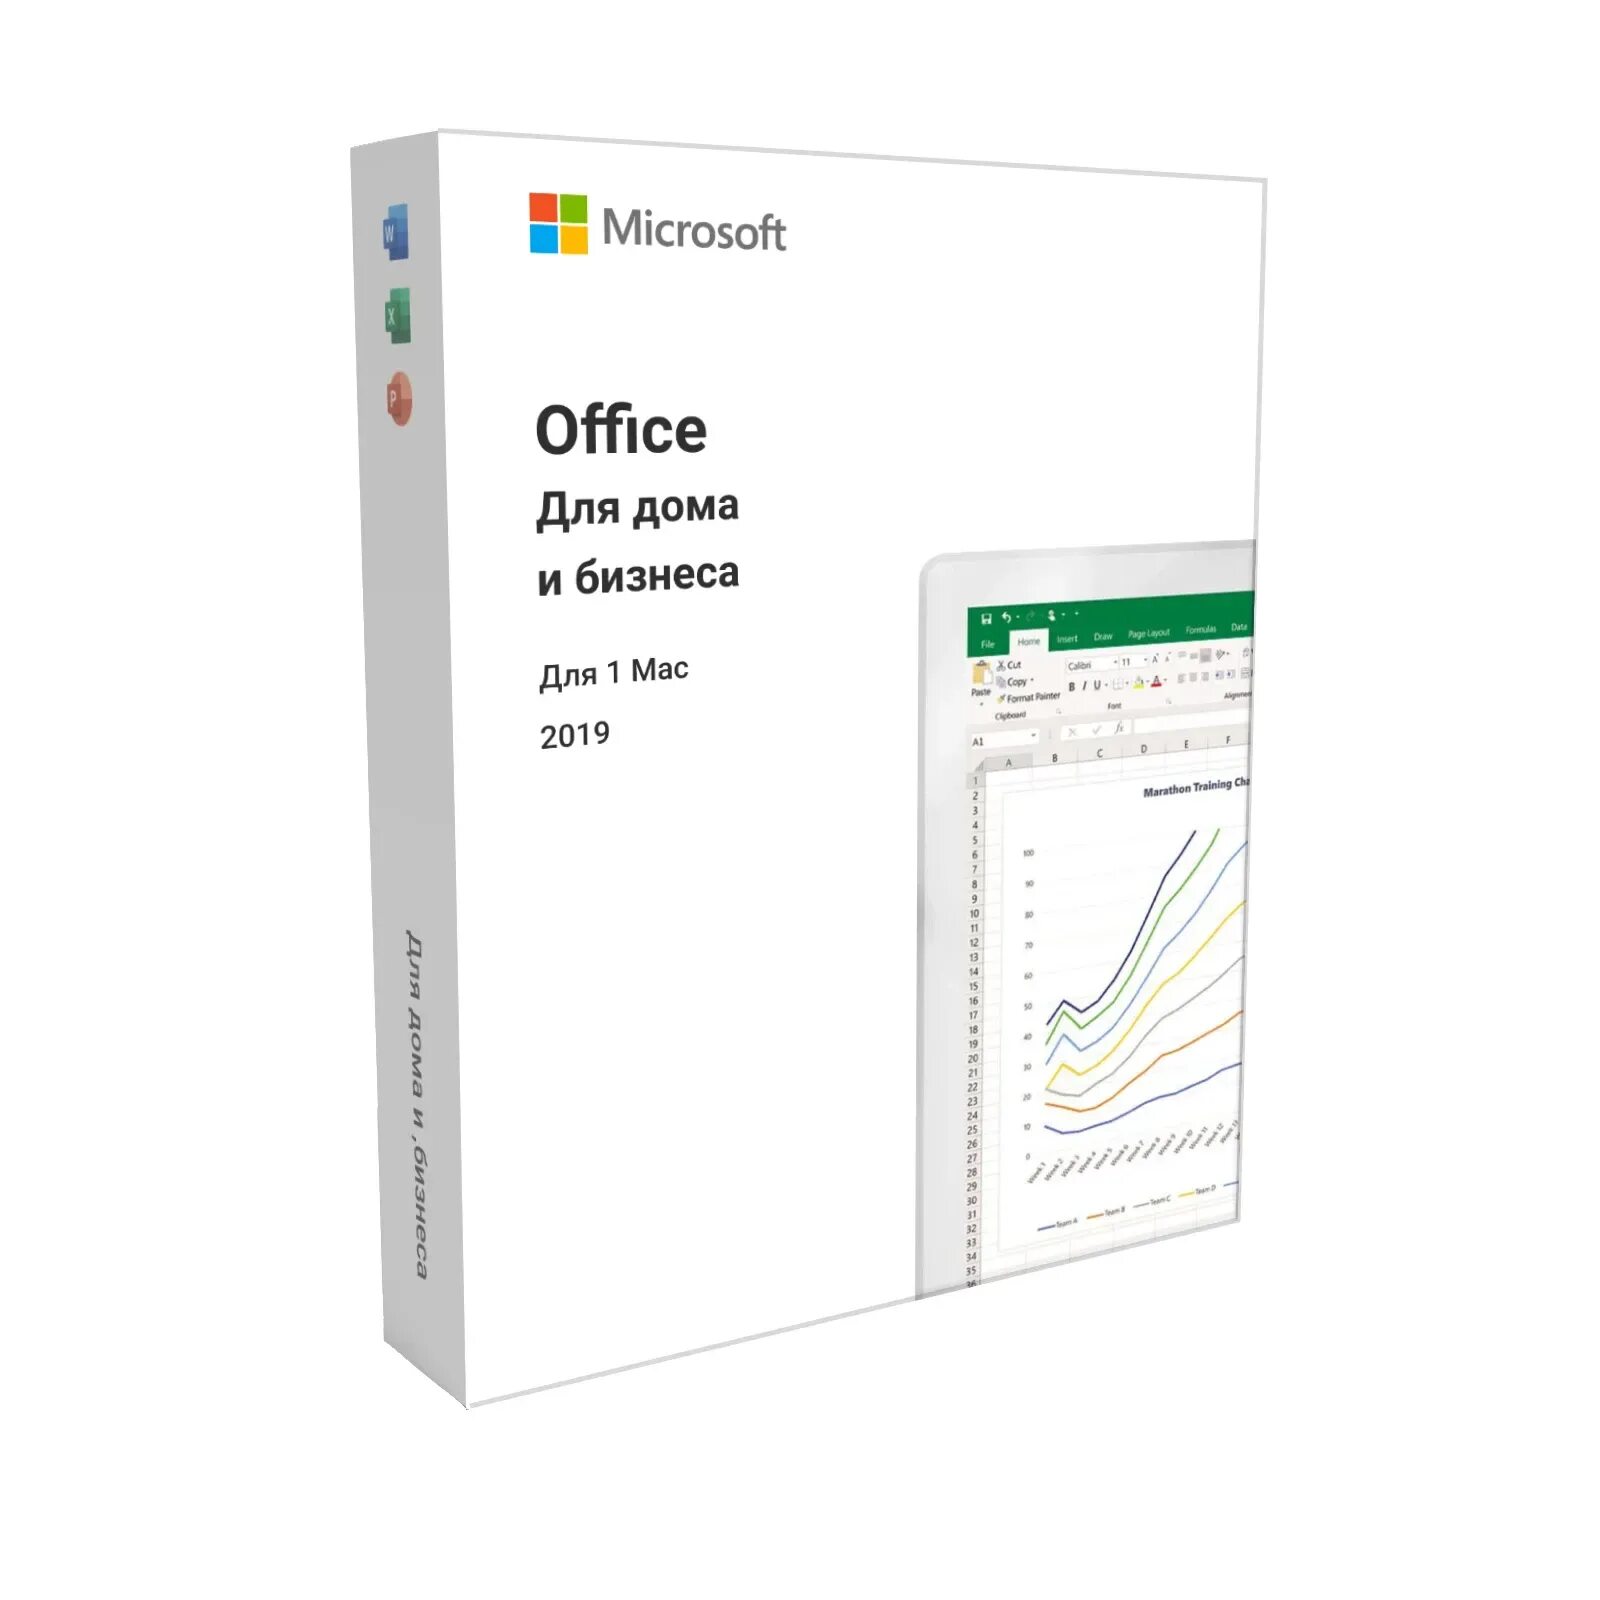 Ключи для office для дома. Офисный пакет Microsoft Office Home and student 2021. Office для дома и бизнеса. Office для дома и бизнеса 2019. Майкрософт офис 2019.